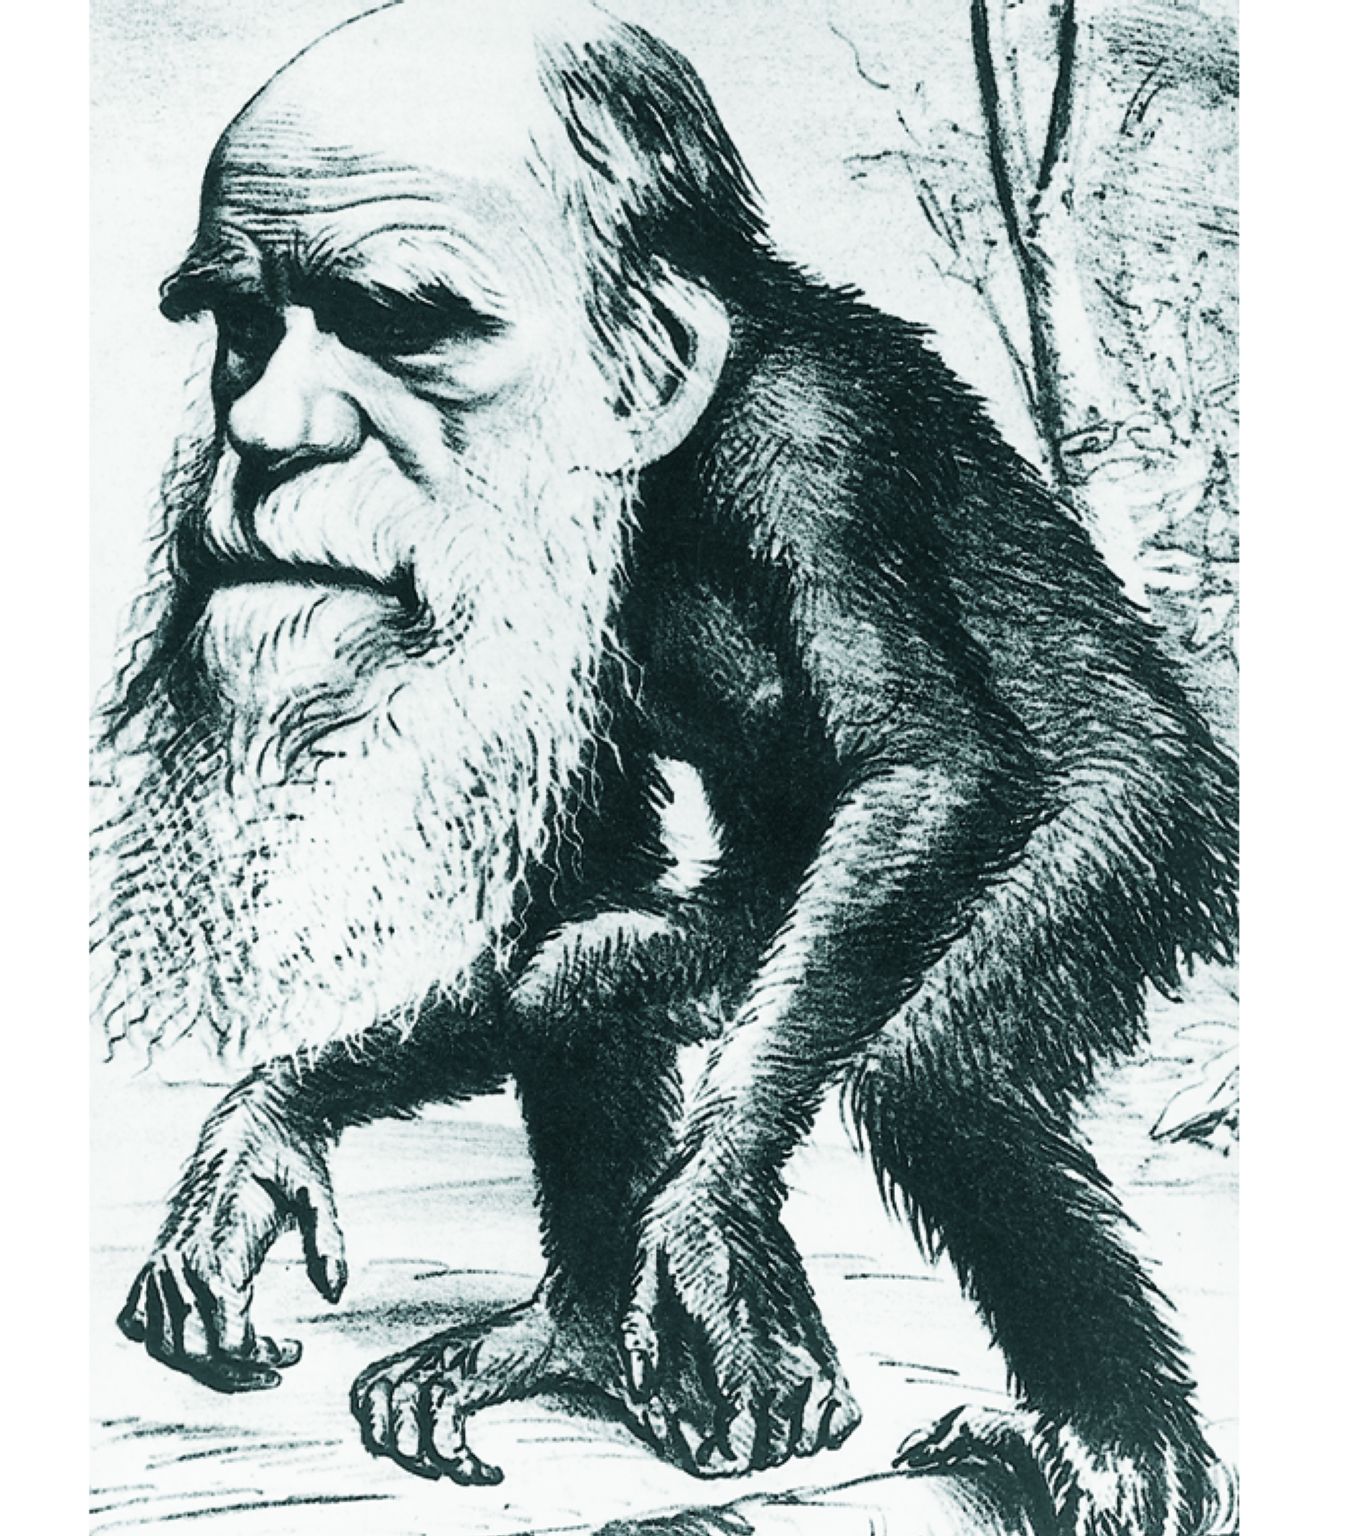 une caricature de Charles Darwin, ses théories sur l’évolution étant tournées en dérision